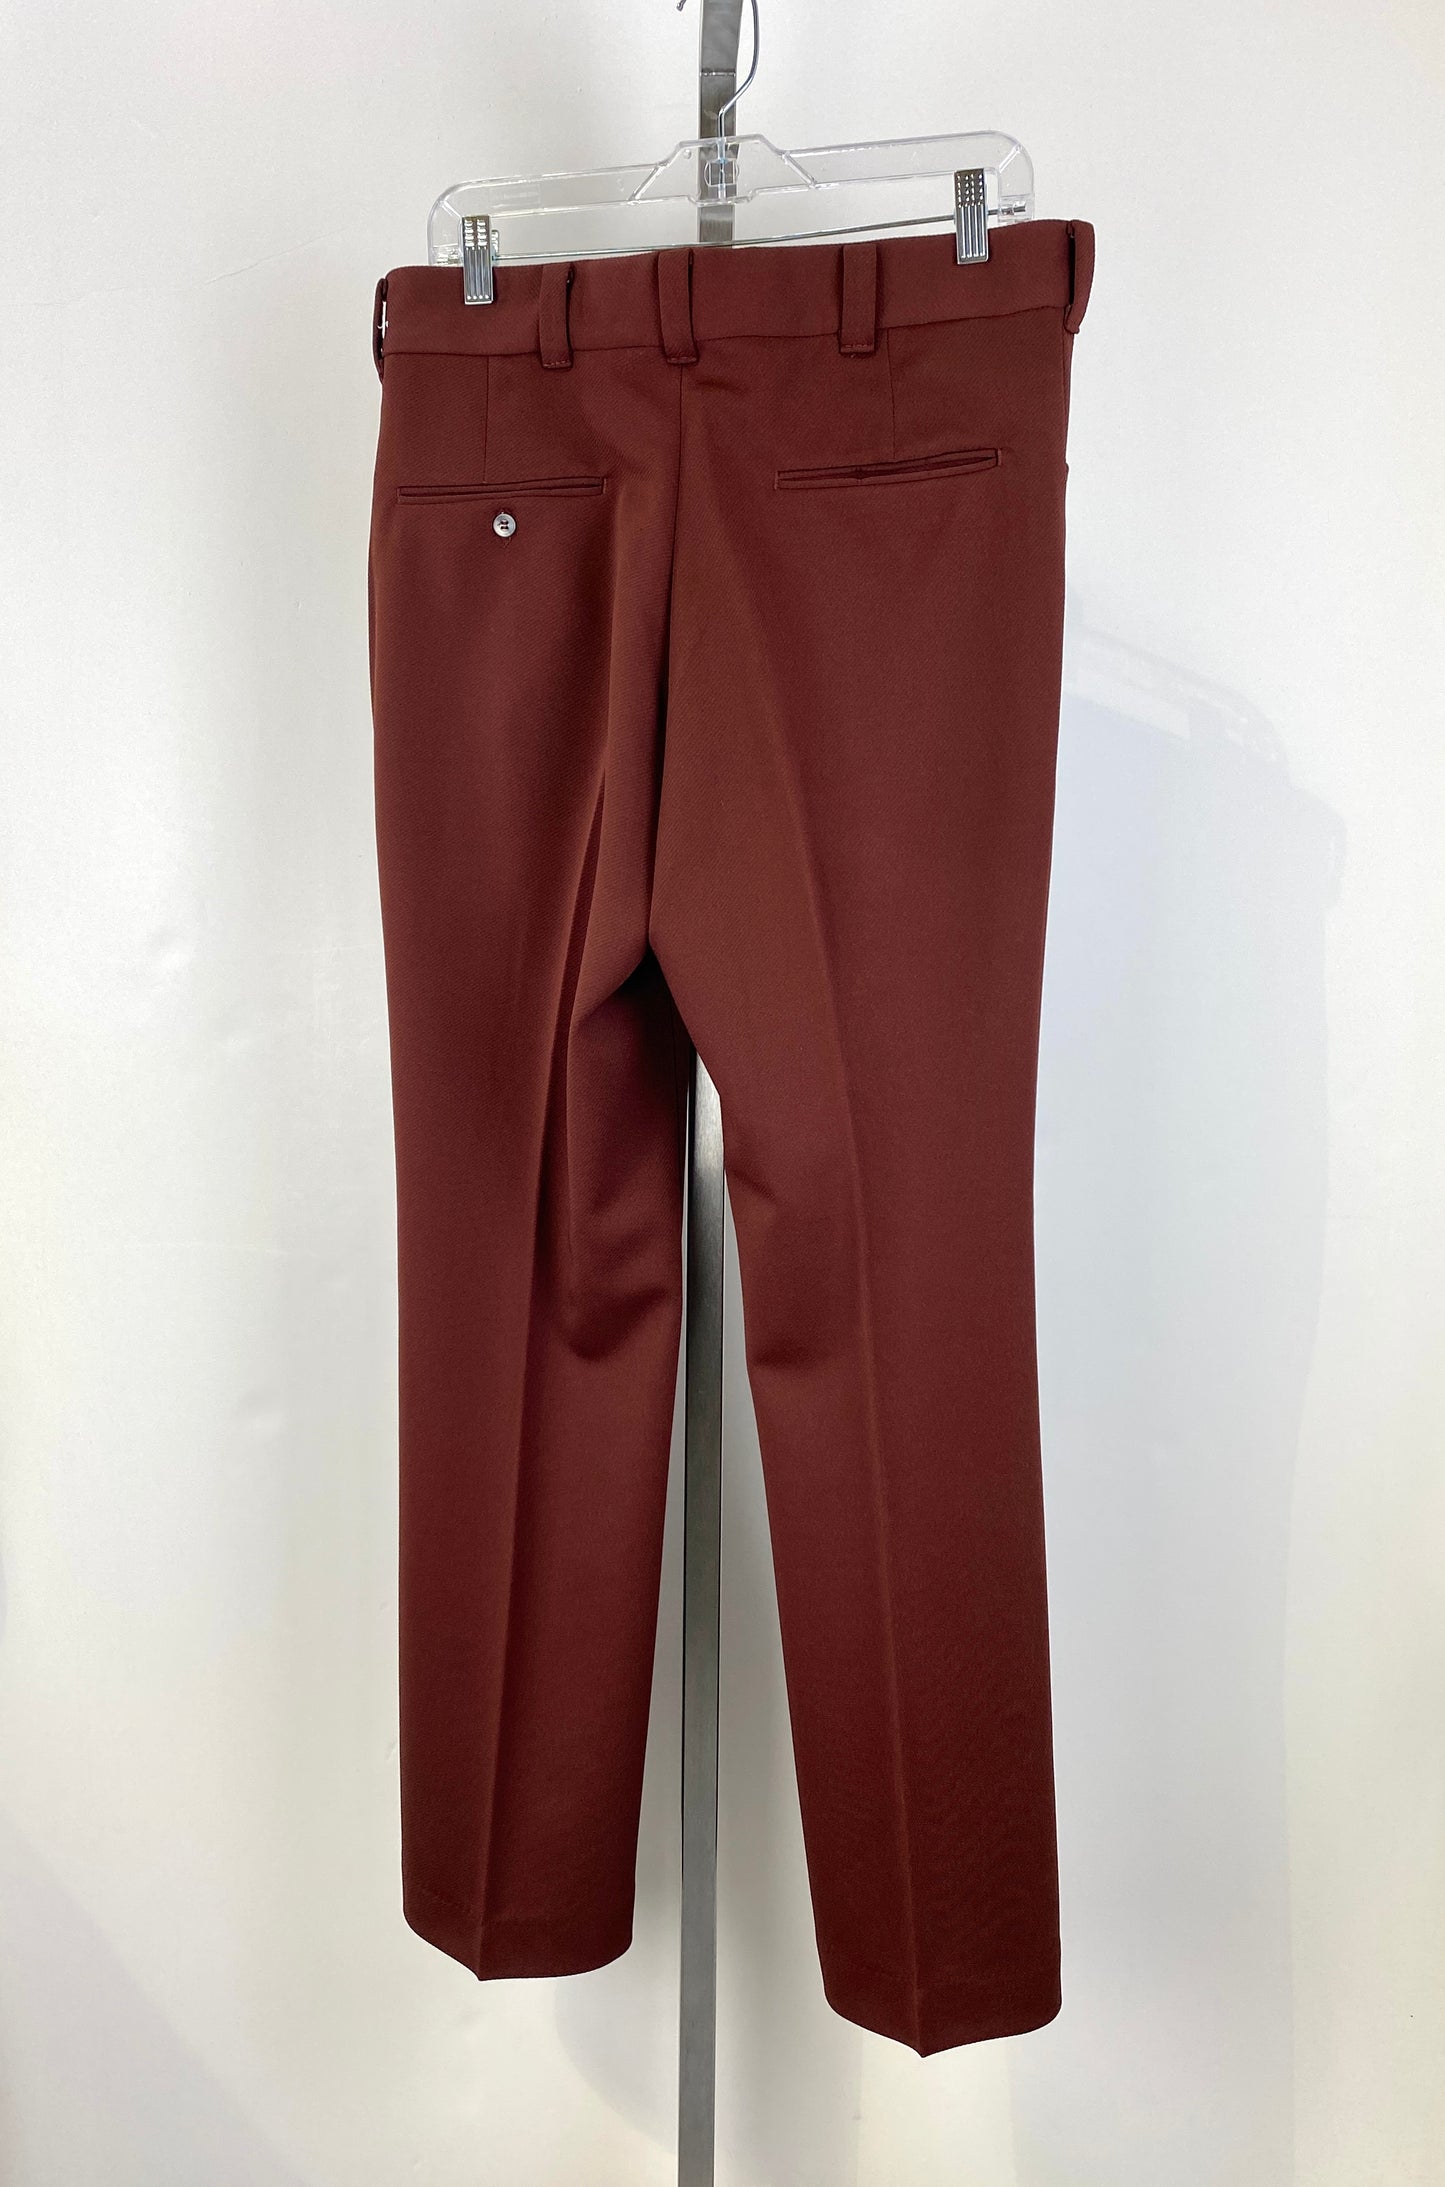 Vintage 1970s Deadstock Knit Polyester Flared Trousers, Men's Brown Lee Slacks, NOS